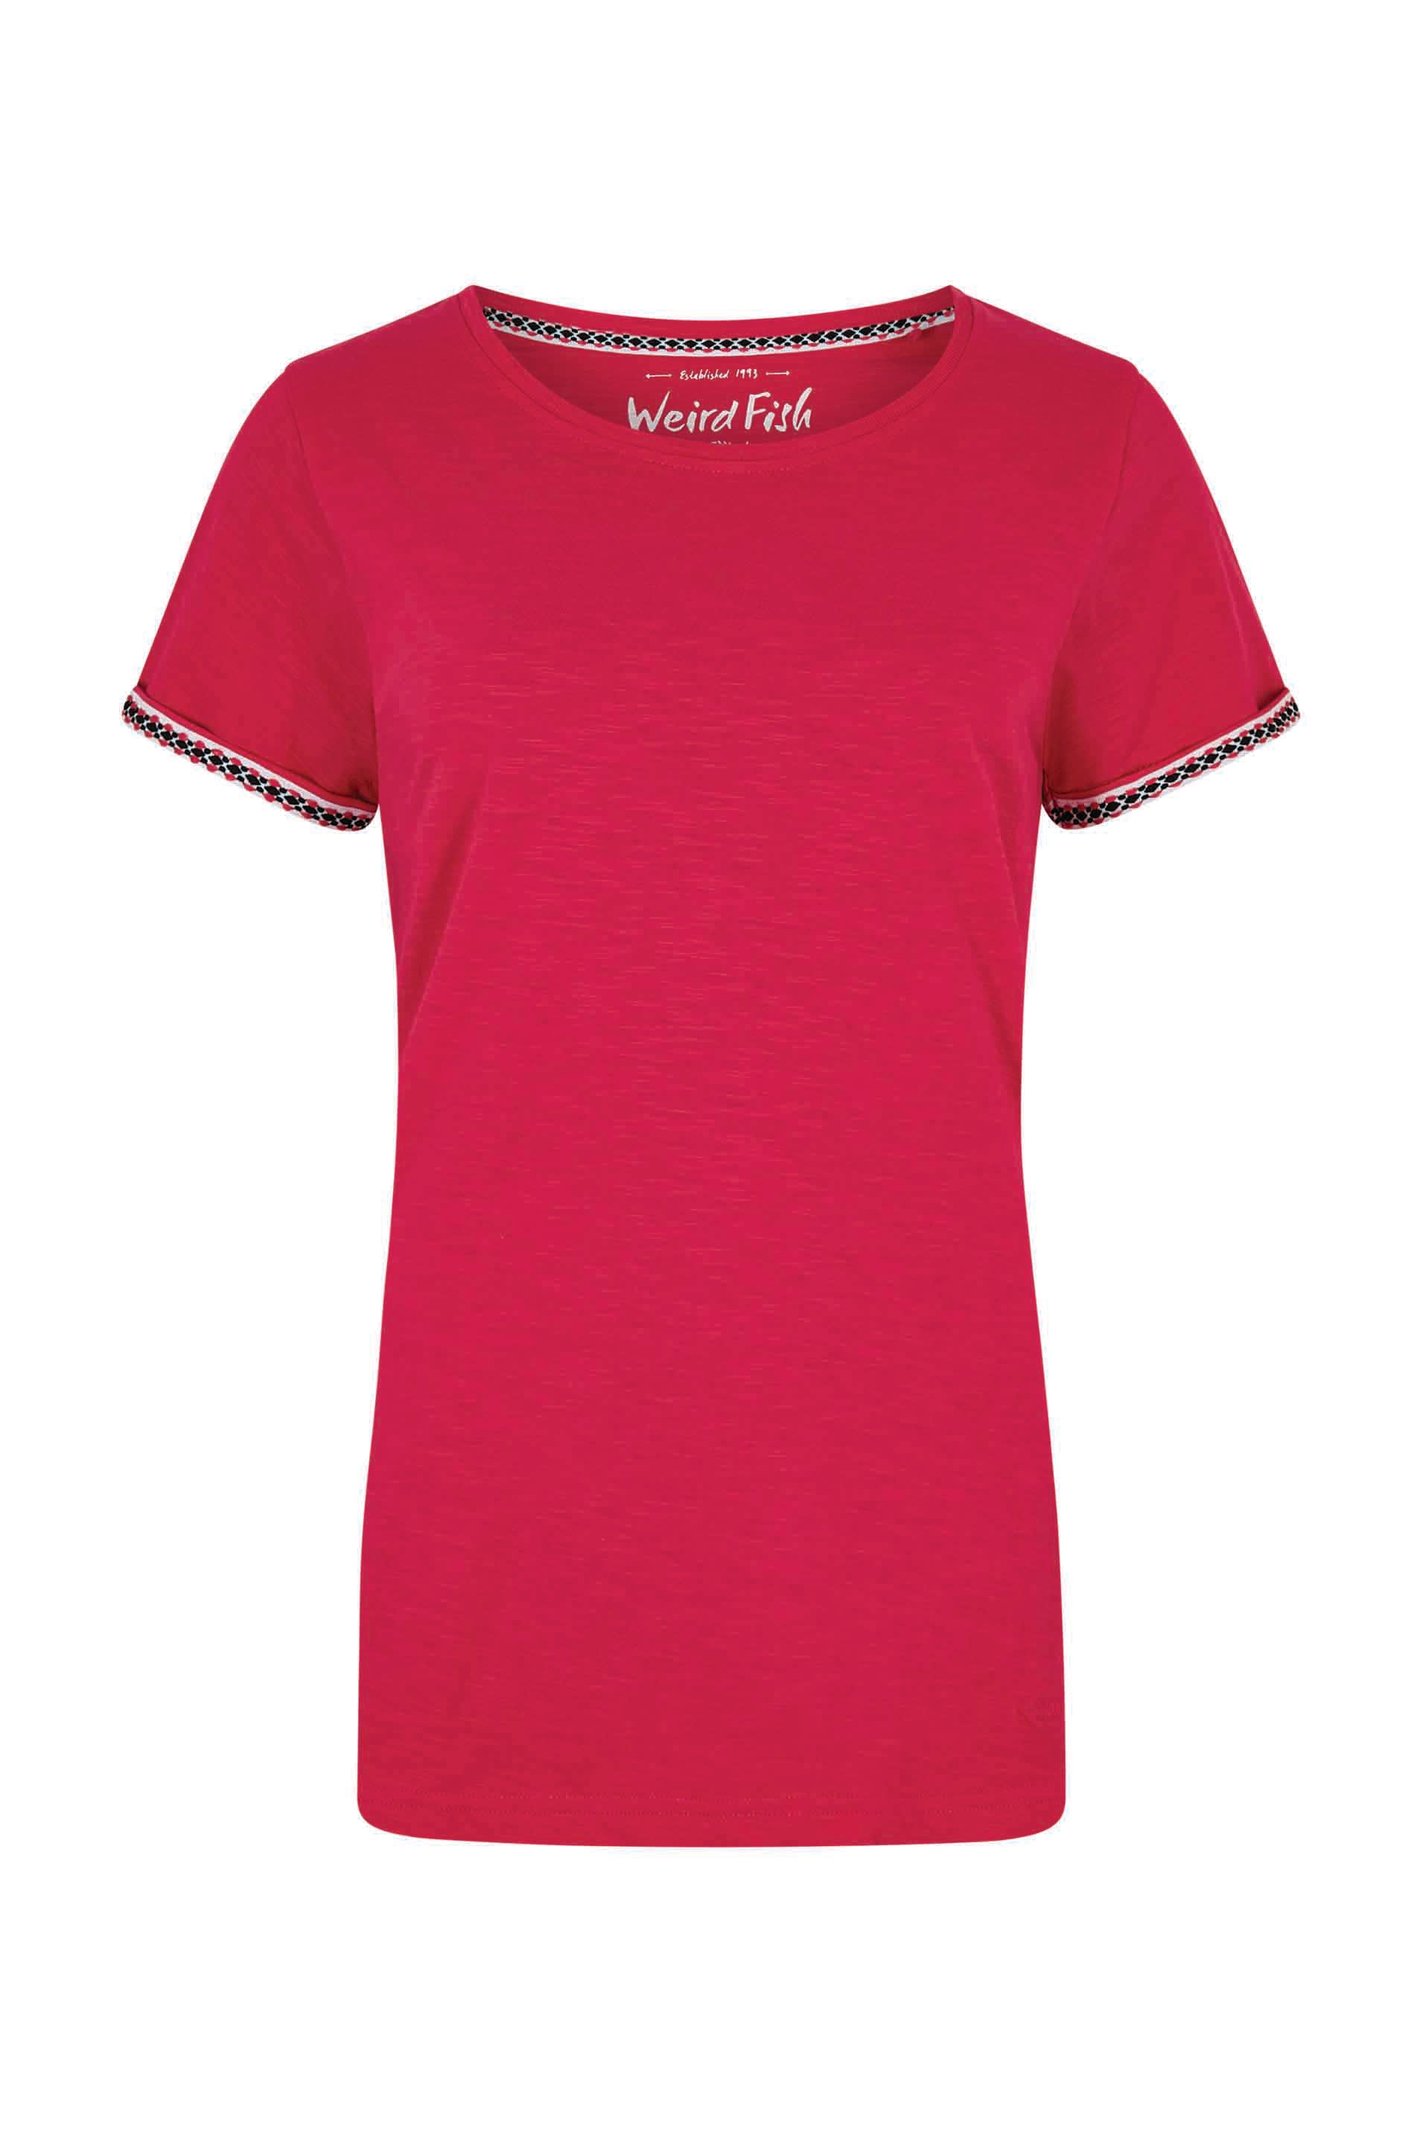 Weird Fish Teya Organic Cotton T-Shirt Hot Pink Size 8